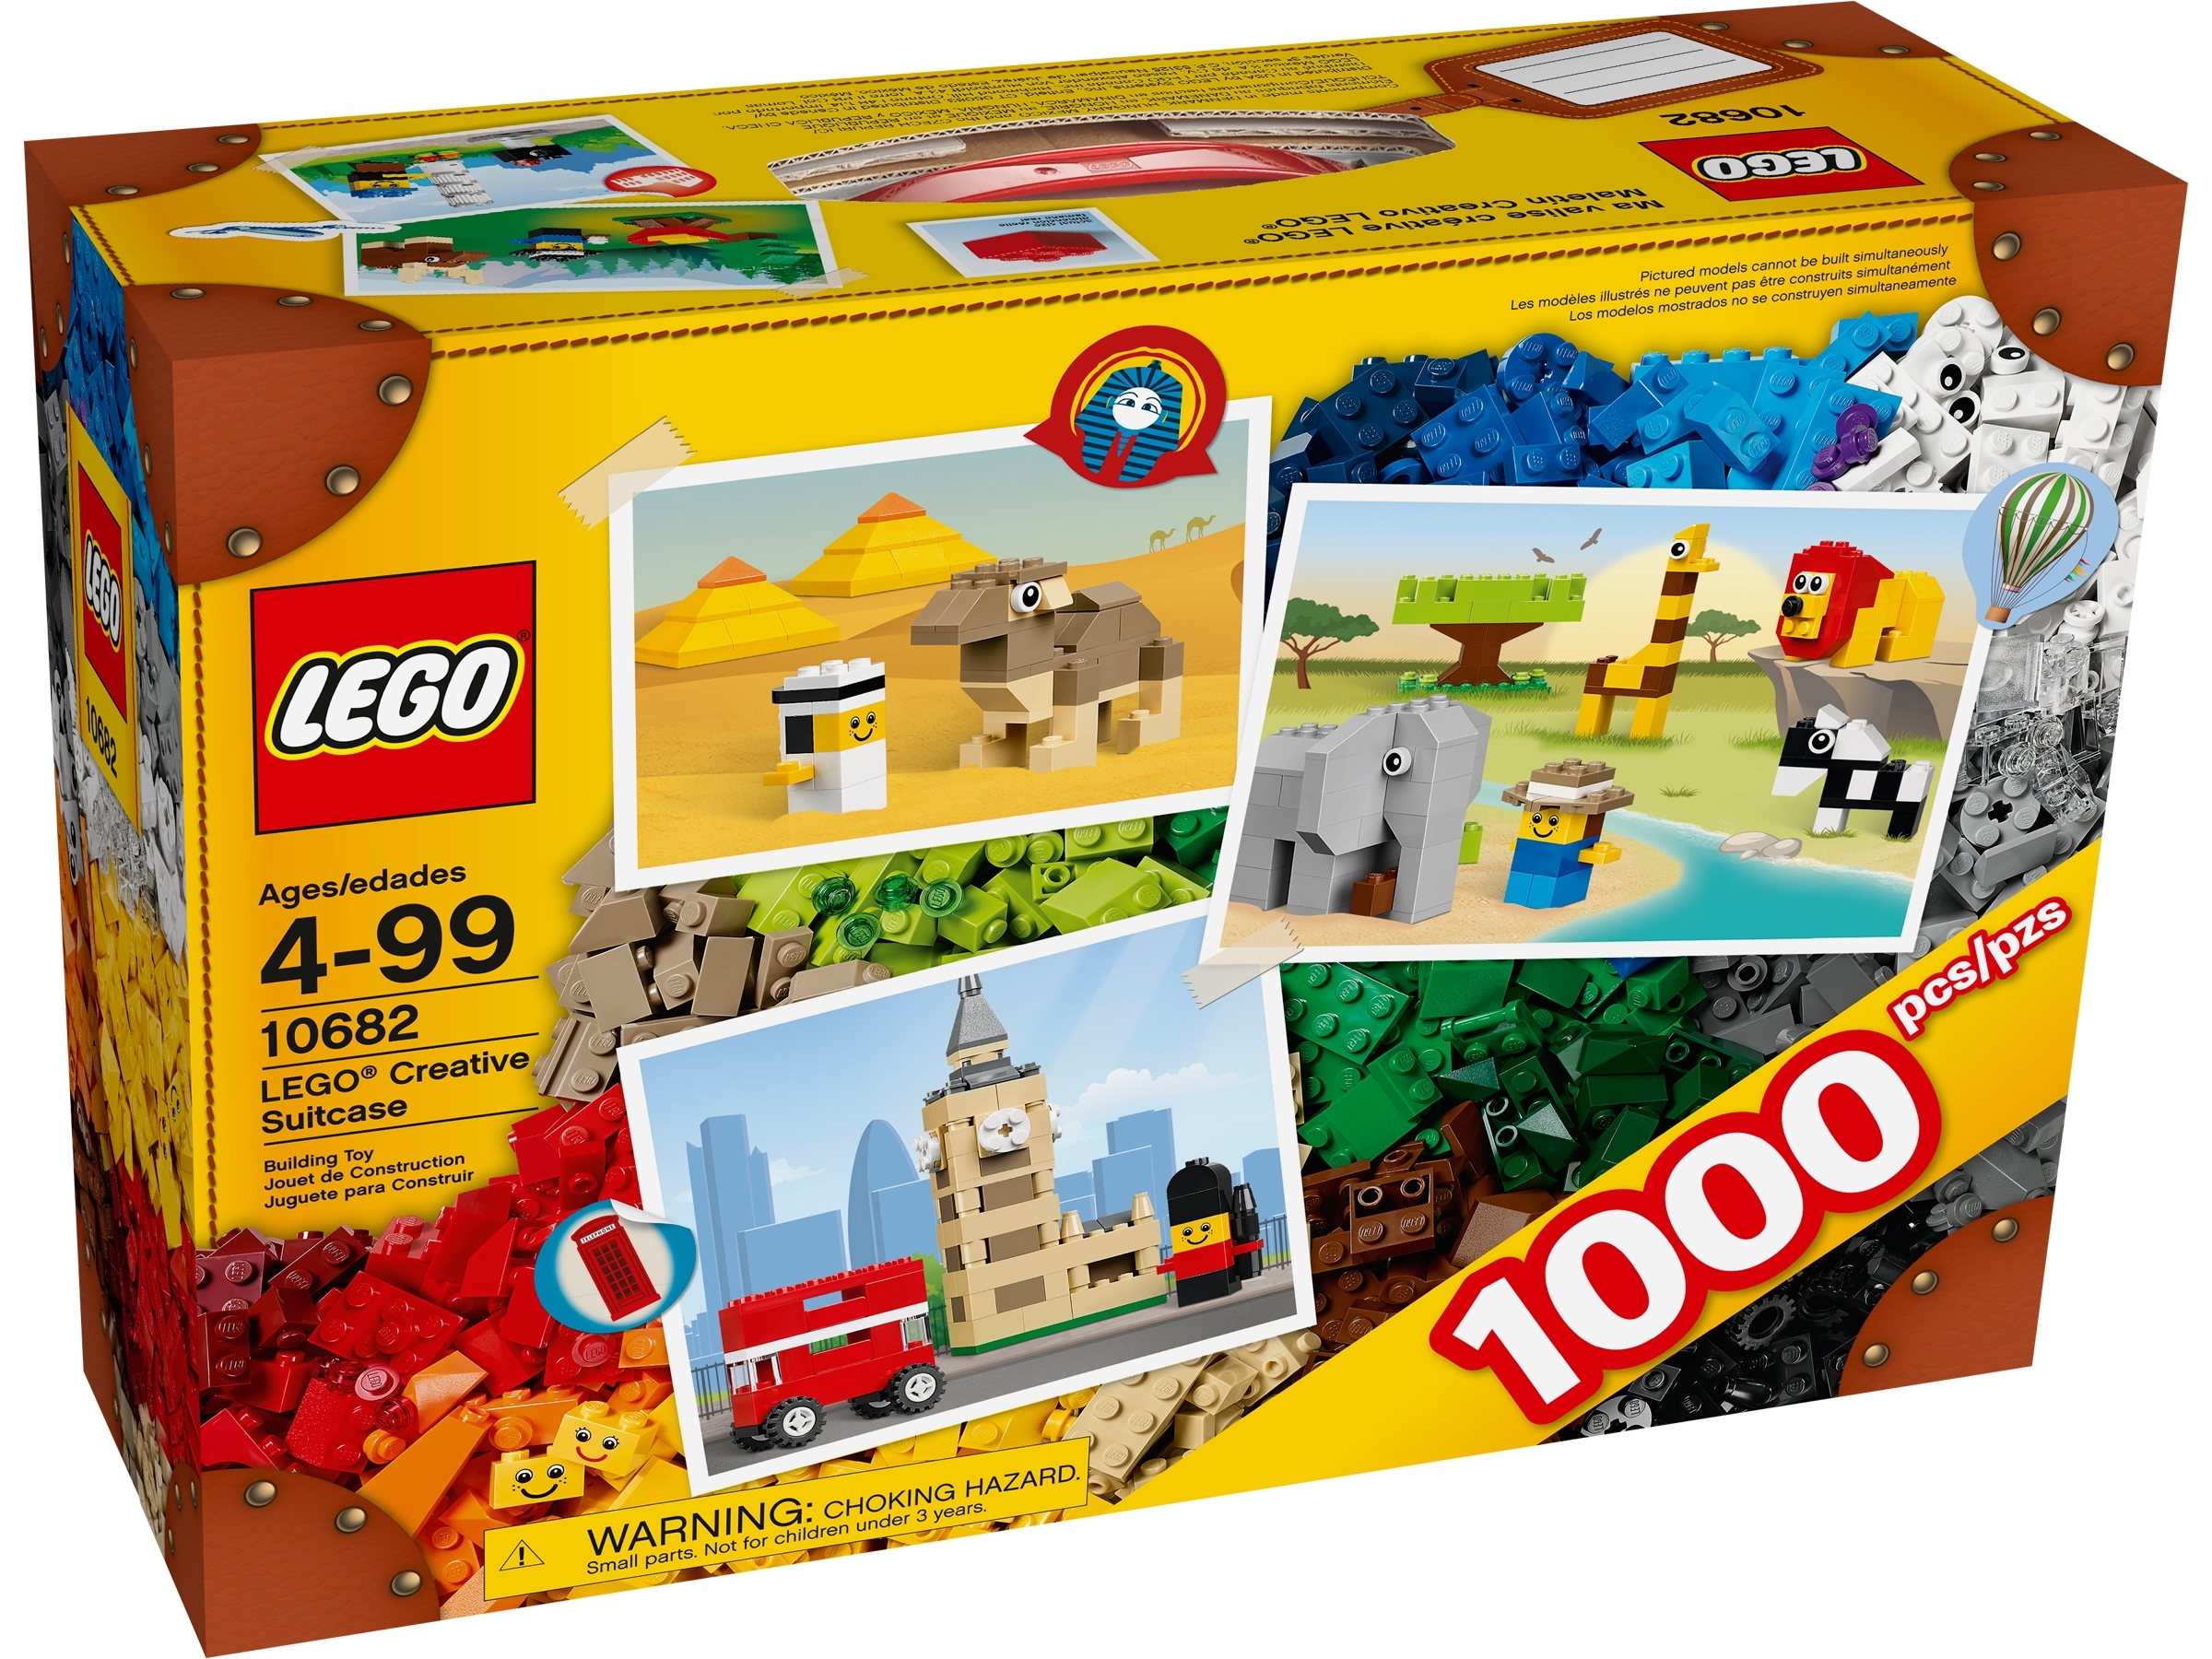 LEGO CREATOR SET COMPLETE IN NO BOX 4838 5762 5864 6471 6743 6912 40127 PICK 1 